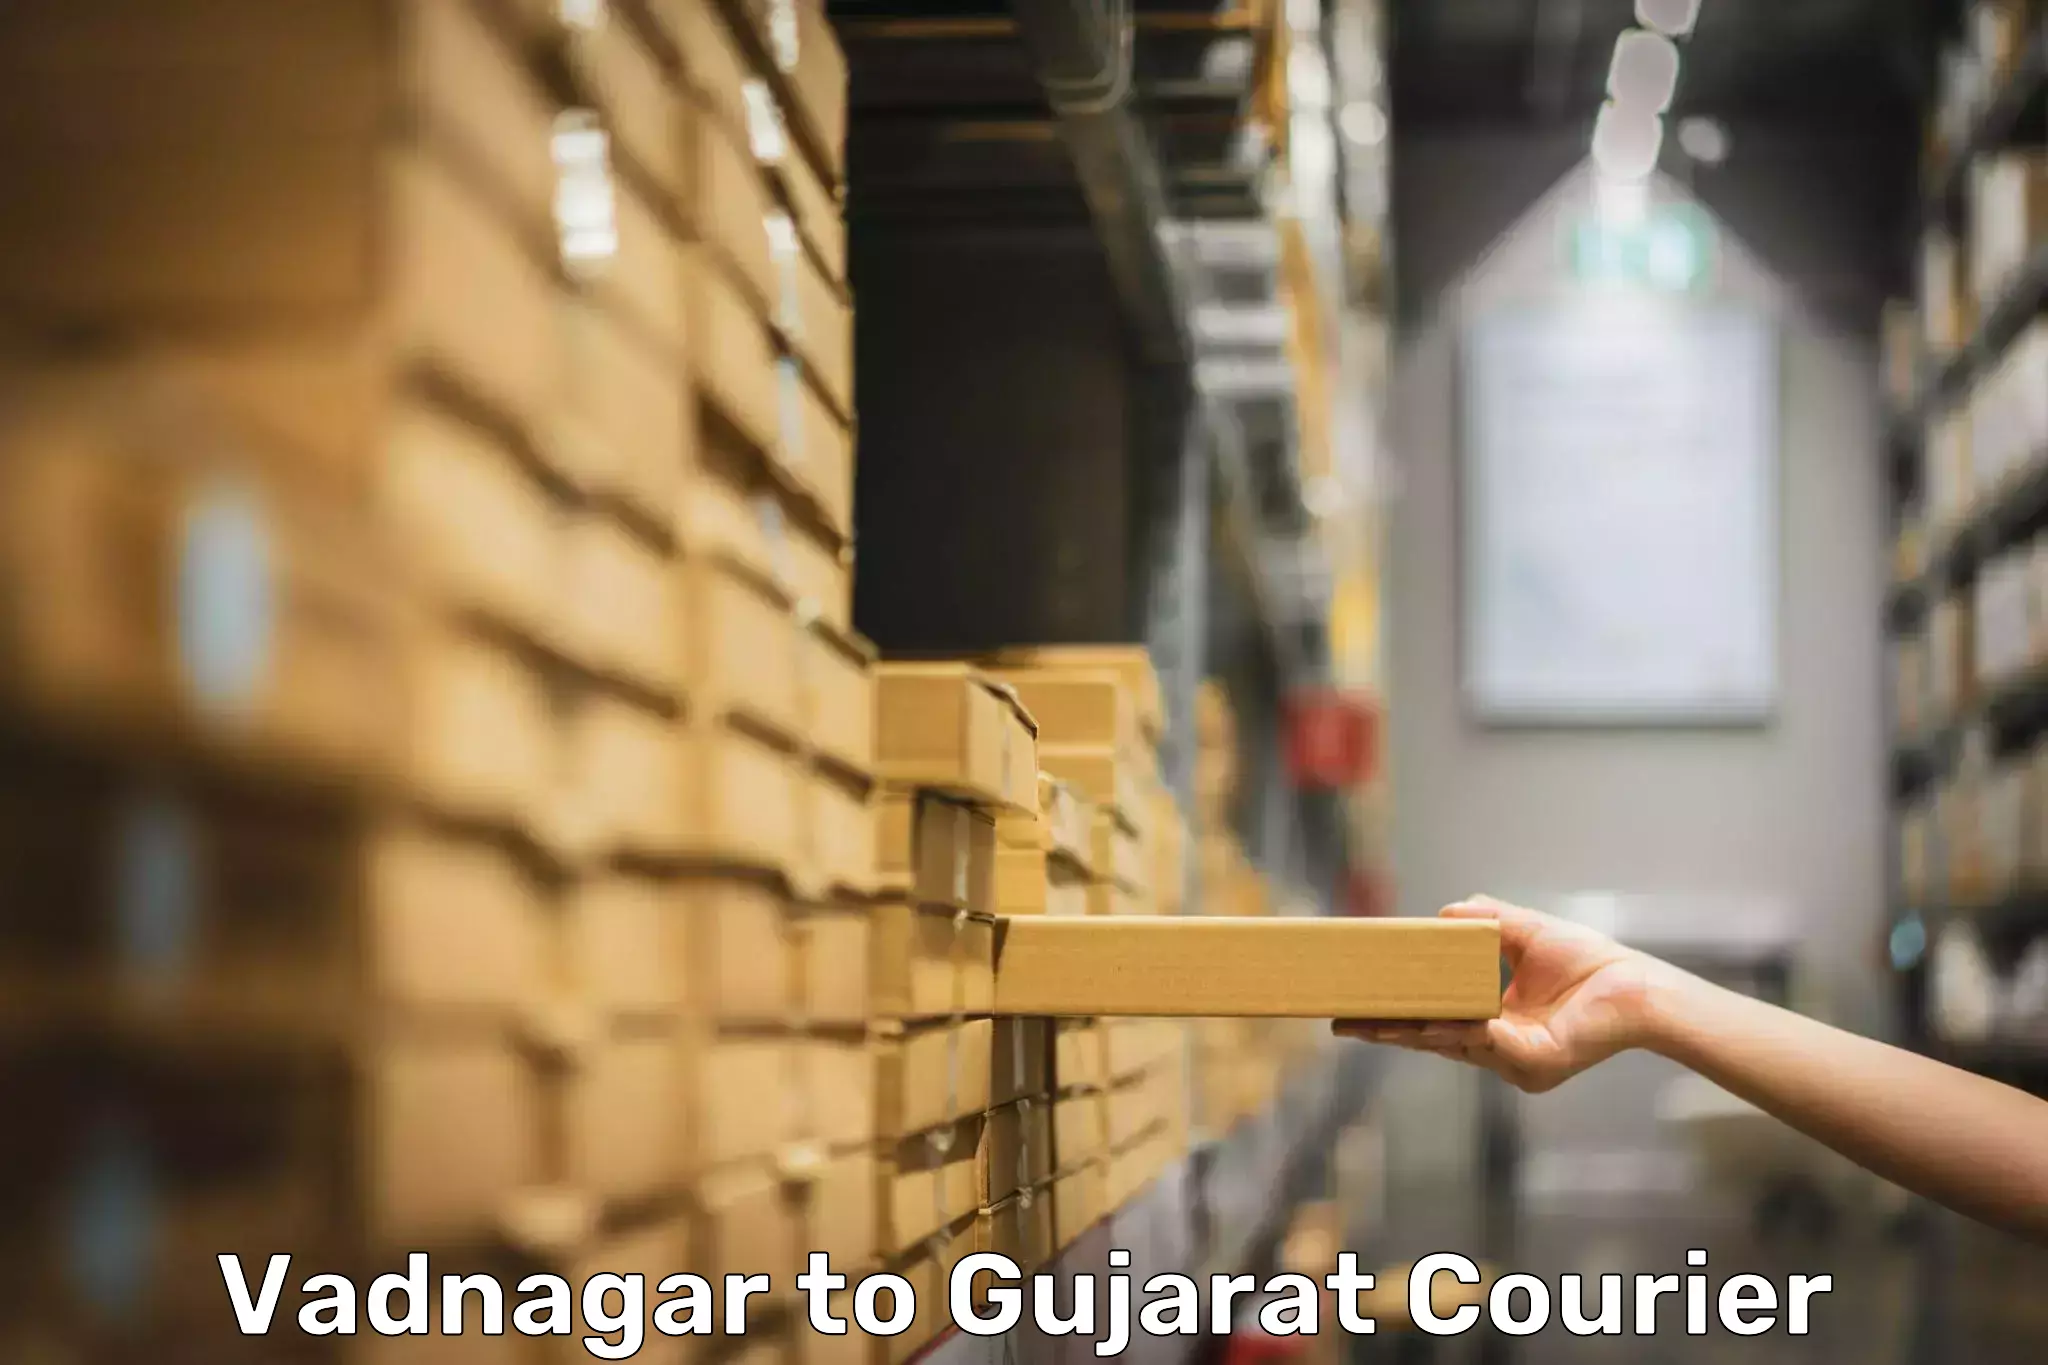 Luggage transport solutions Vadnagar to Gandhinagar